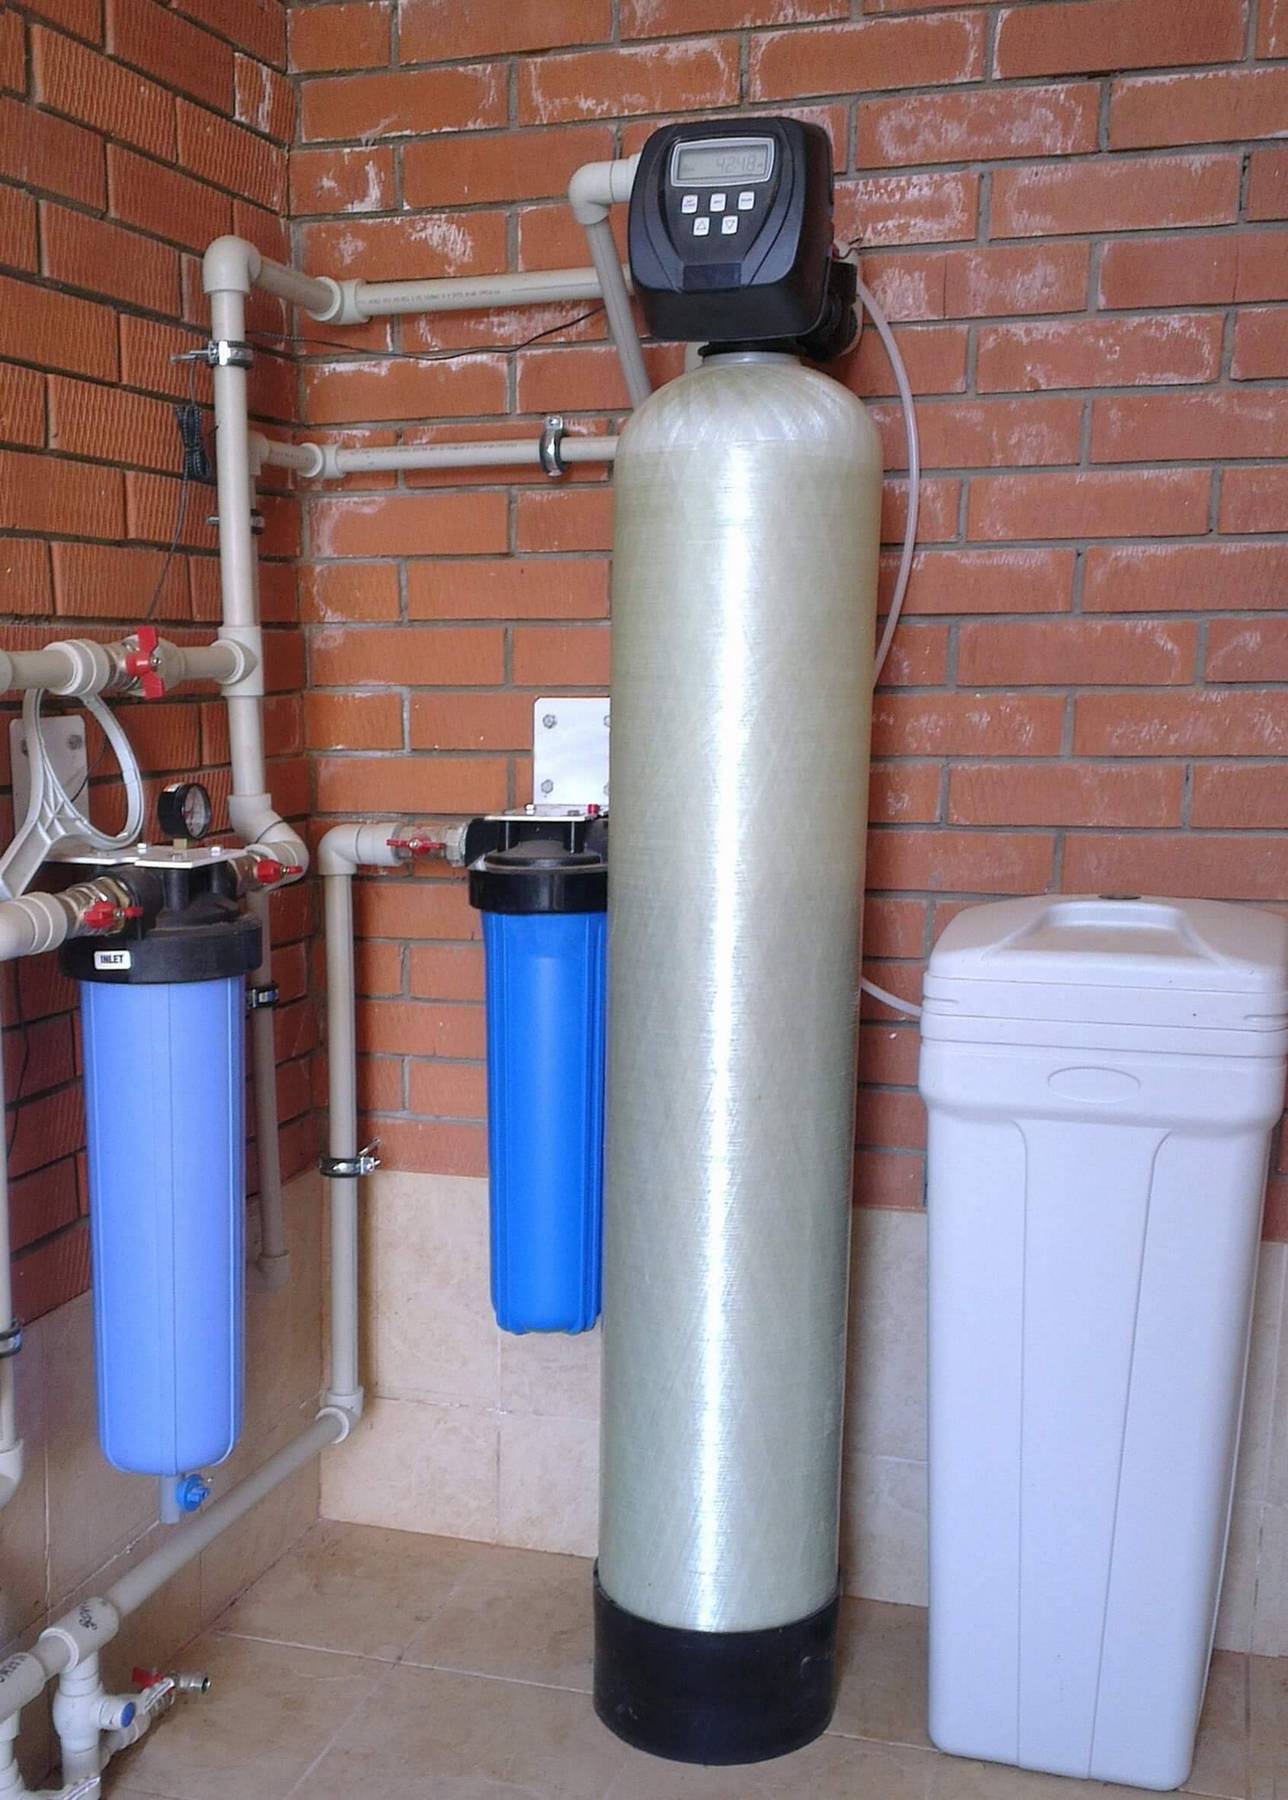 Купить фильтр для воды от извести. Фильтр воды Аквафор для скважины. Аквафор для скважины. Система водоочистки на скважине. Система фильтров для умягчения технической воды.